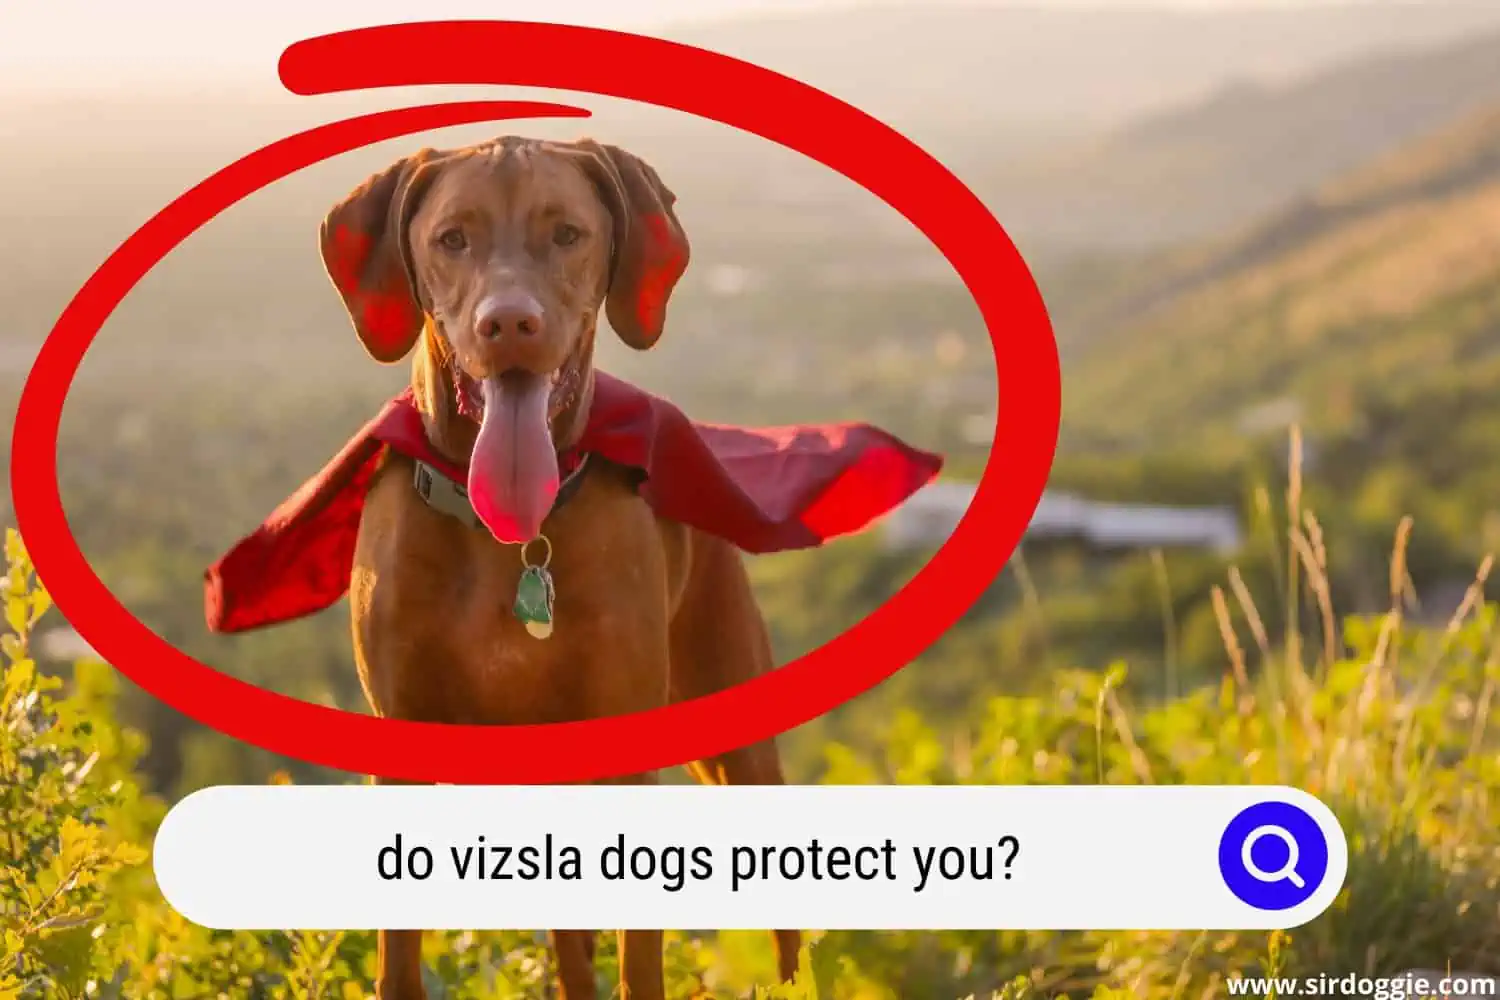 A vizsla dog wearing cape